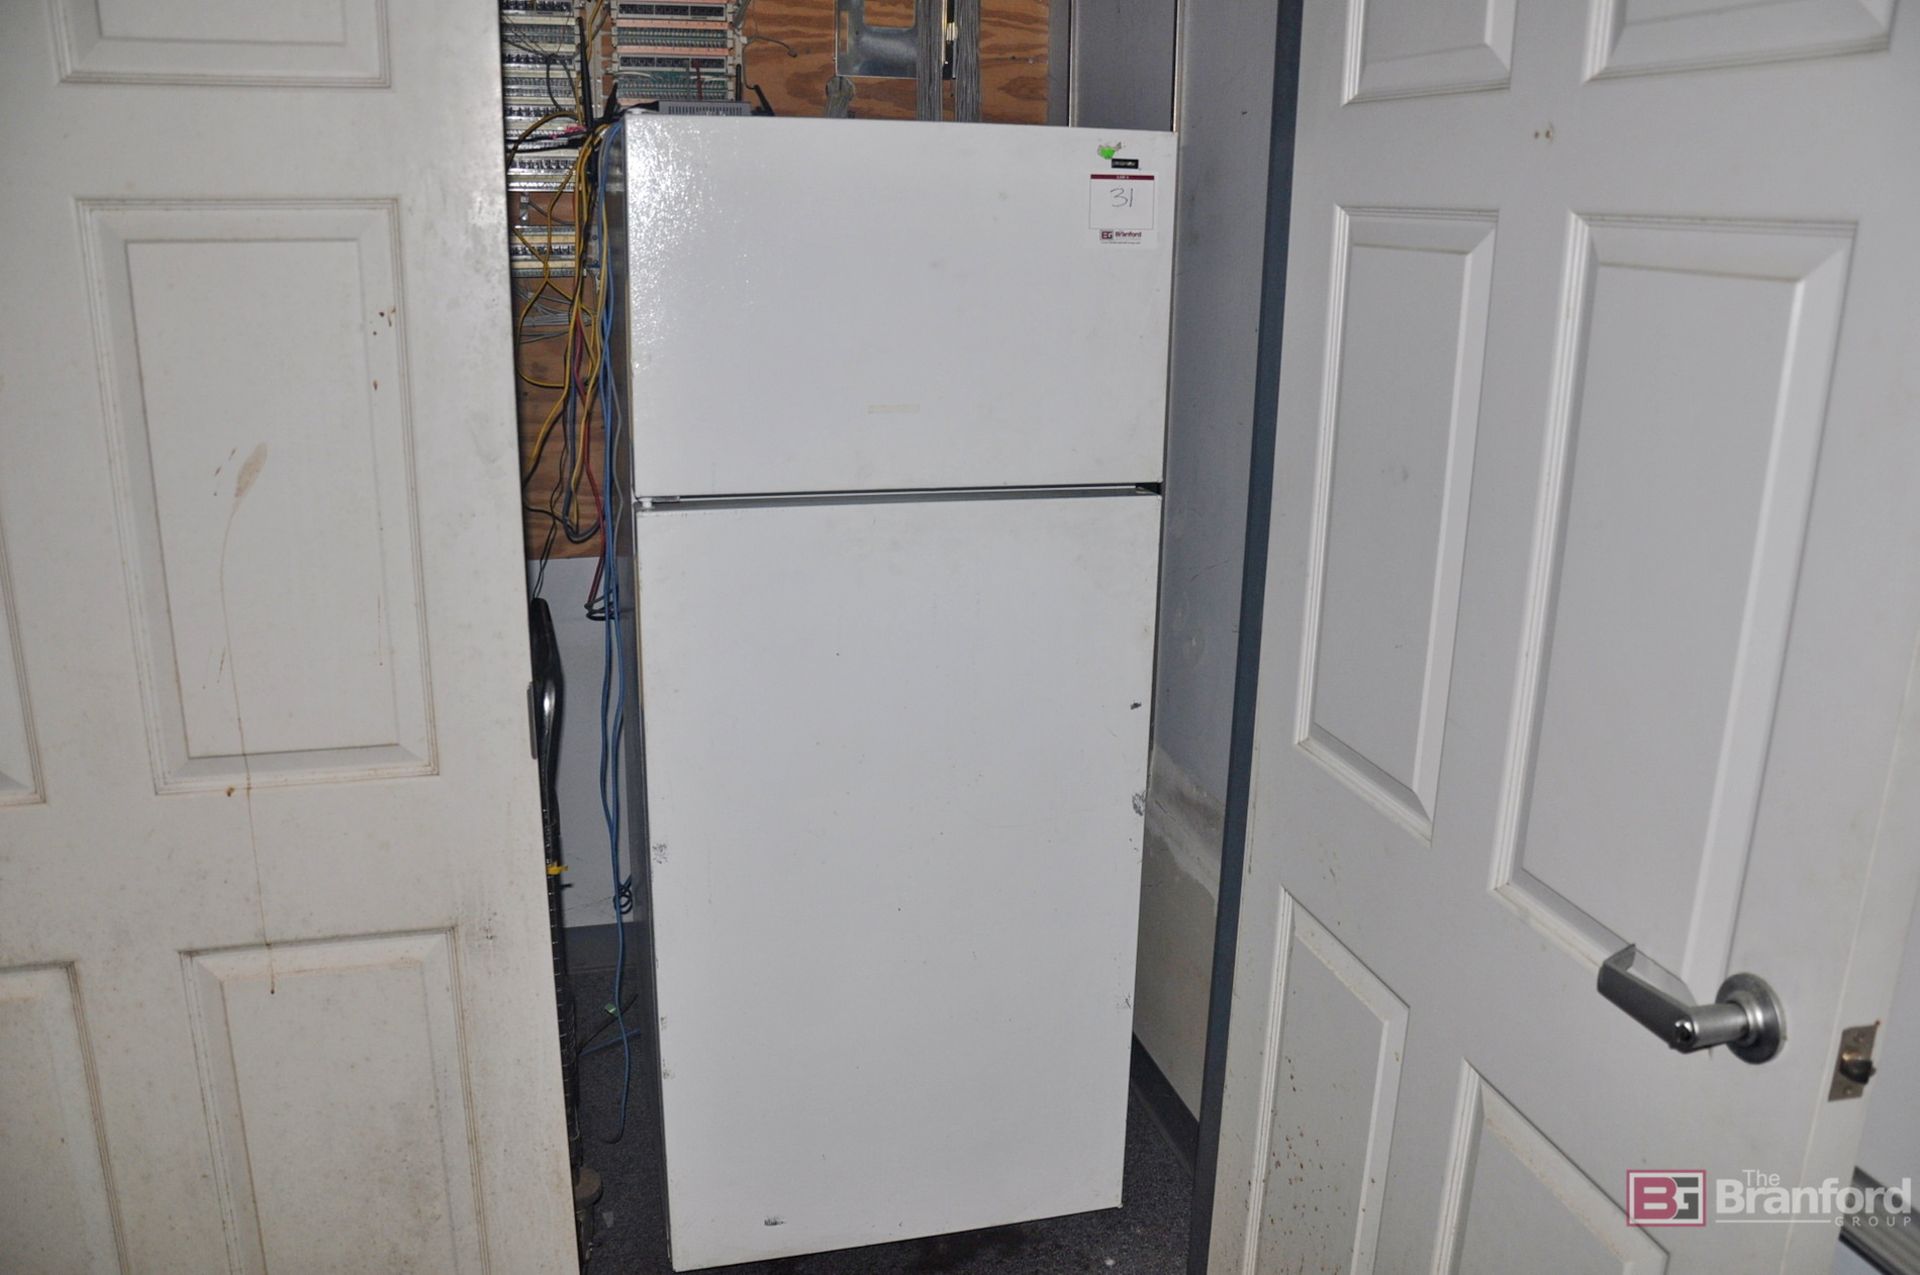 Refrigerator w/ top freezer